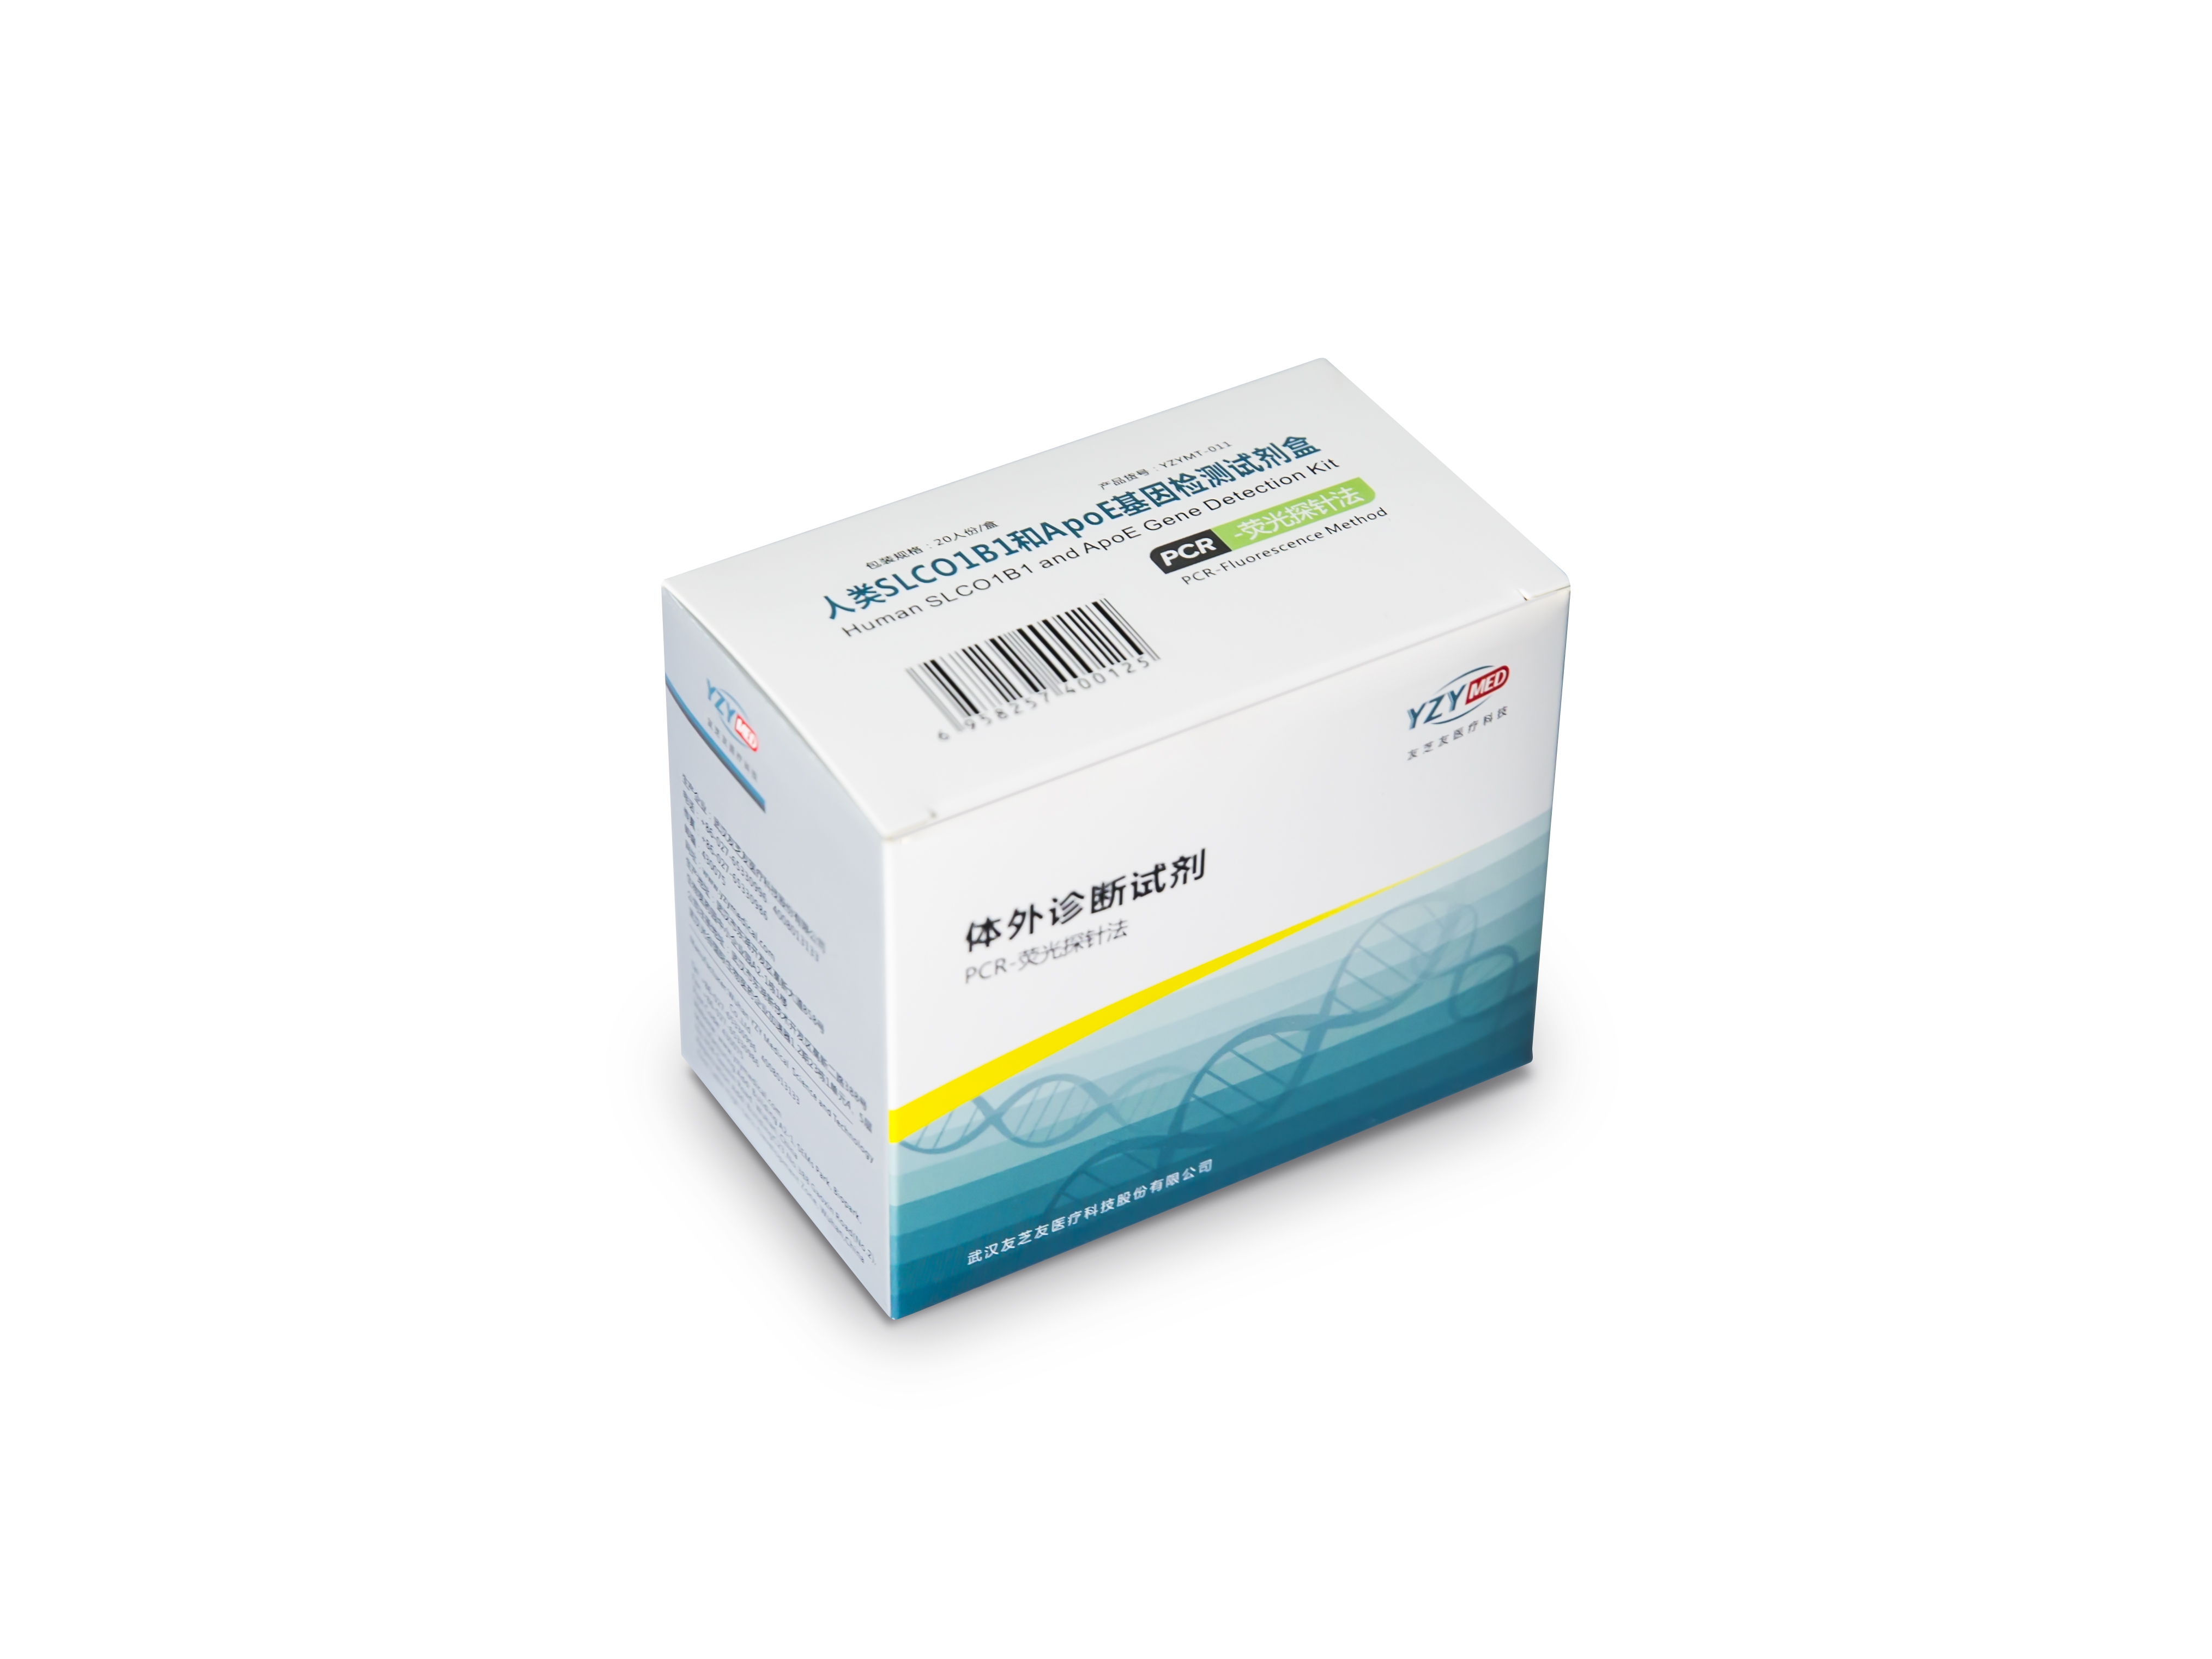 【友芝友】人类SLCO1B1和APOE基因检测试剂盒(PCR-荧光探针法)-云医购